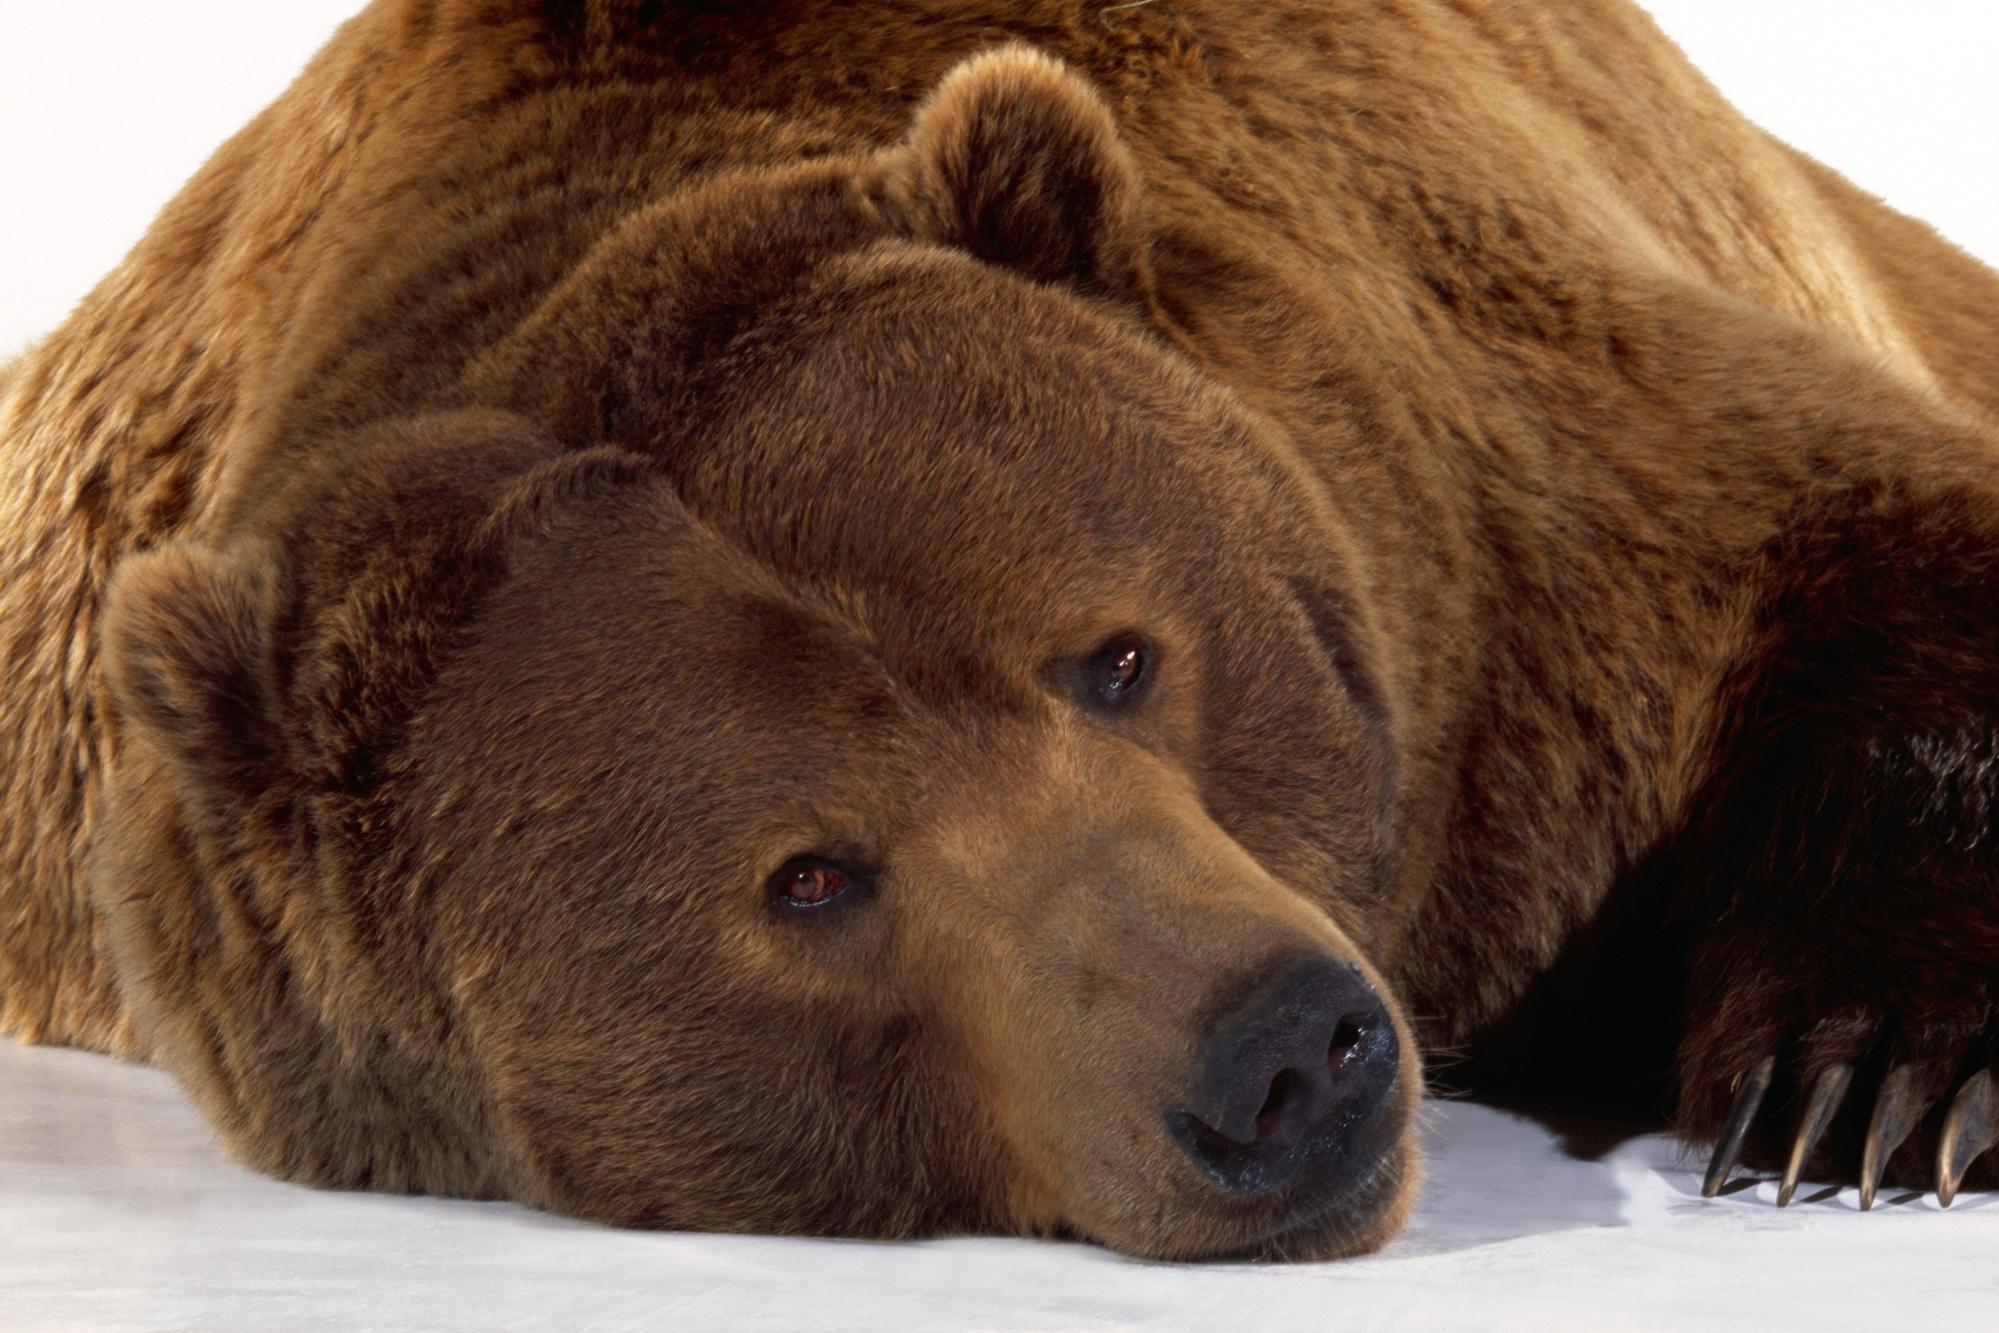 Védett medvét lőttek ki orvvadászok – videó